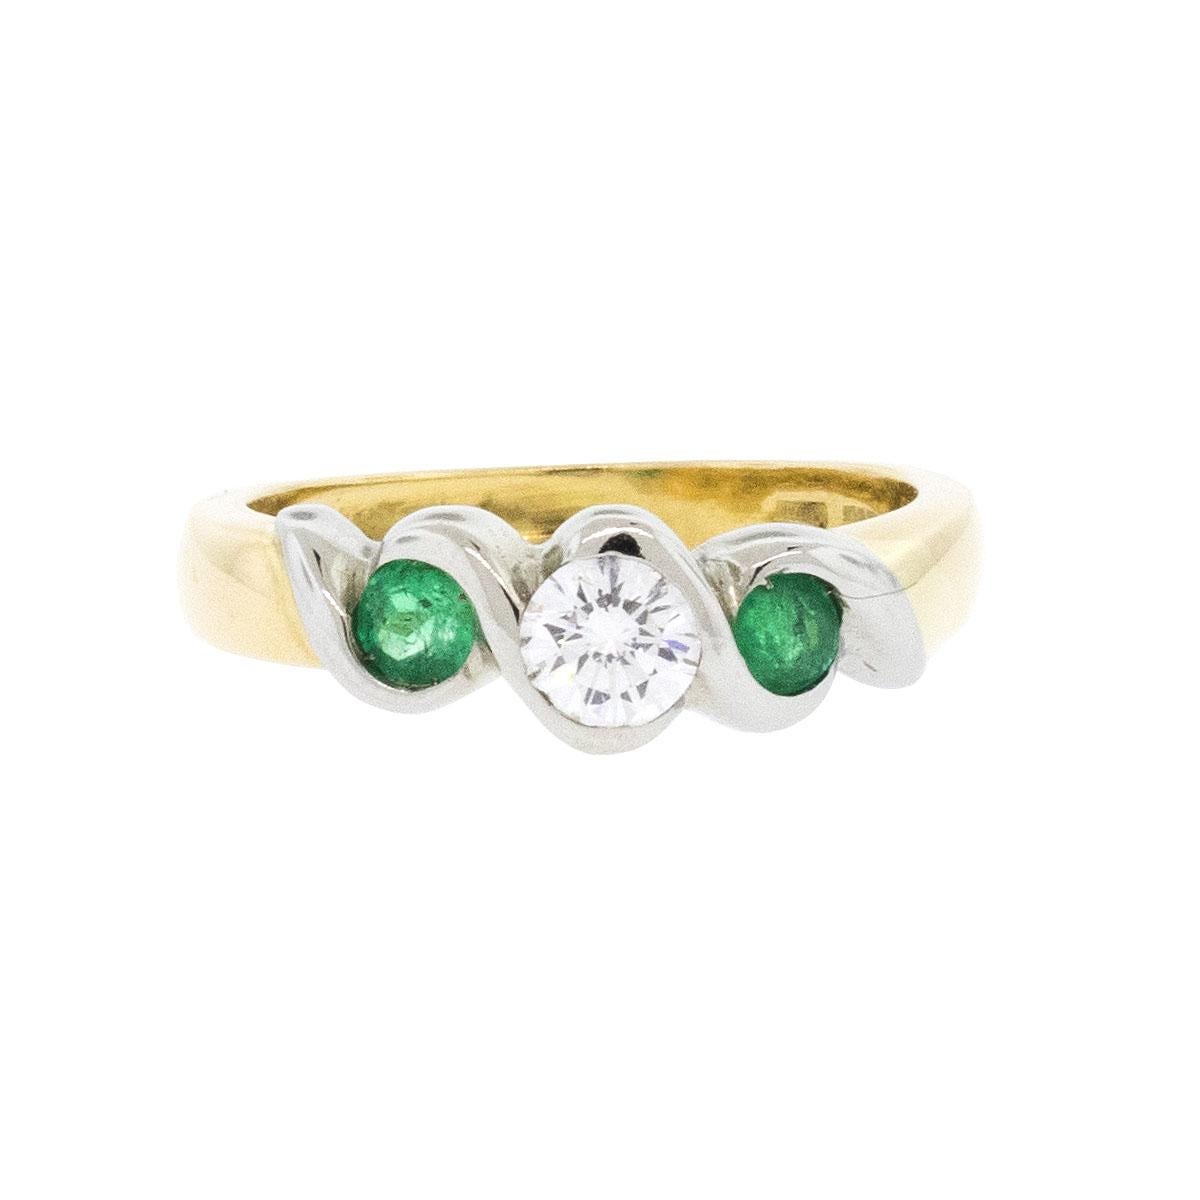 Unternehmen: N/A

Stil des Schmucks: Diamant & Smaragd Ring

MATERIAL: 18k Gelbgold

Edelsteine: Center Diamond und Smaragd Edelsteine

Abmessungen: 21mm x 0,7mm x 22mm

Gewicht: 5,5g (3,5dwt)

SKU: 12399-1